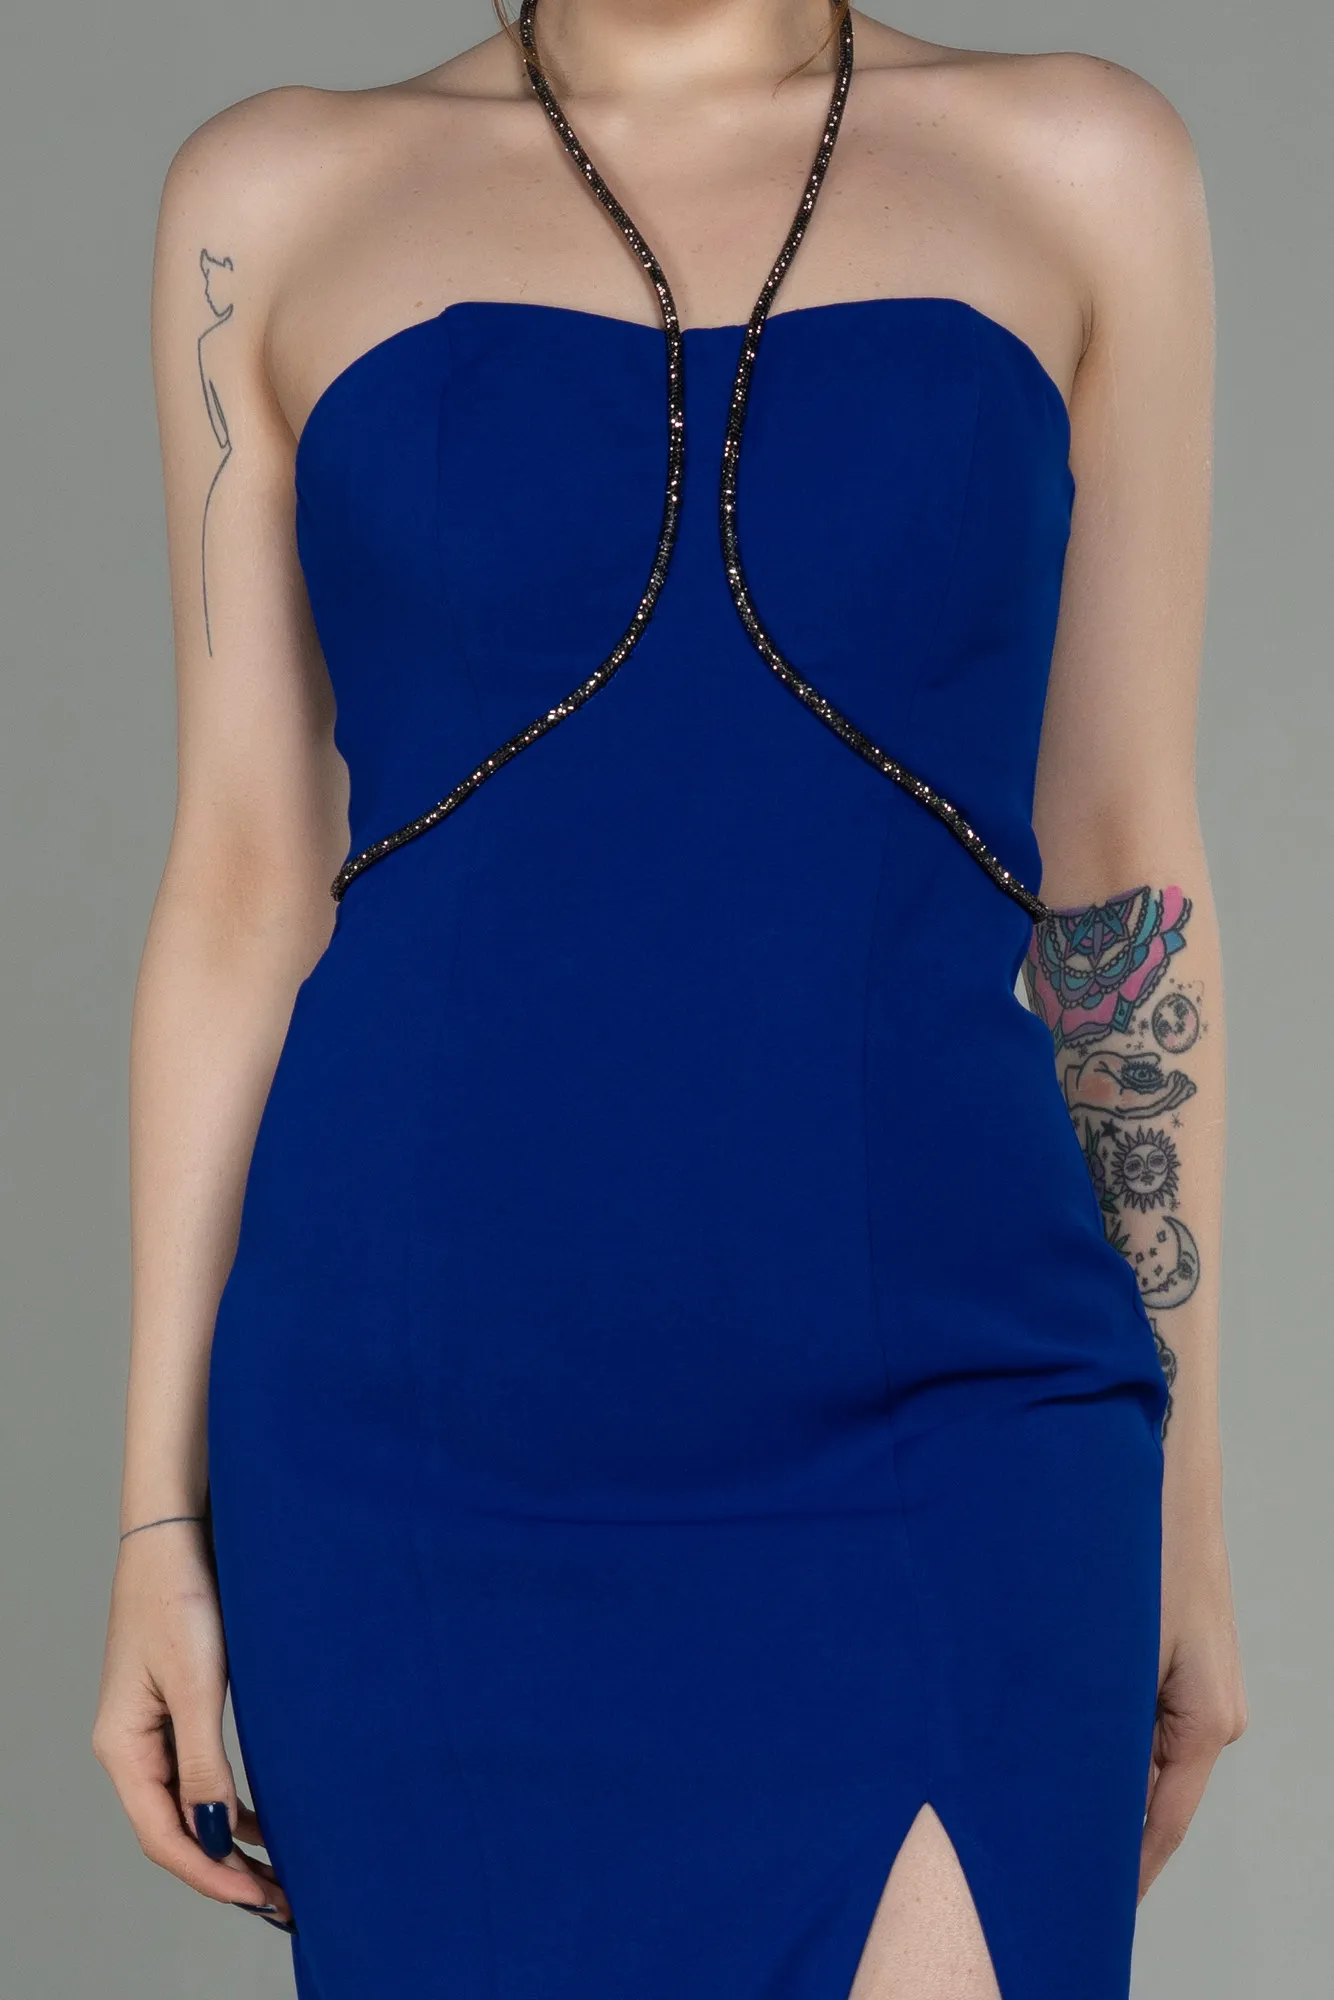 Sax Blue-Midi Invitation Dress ABK1709